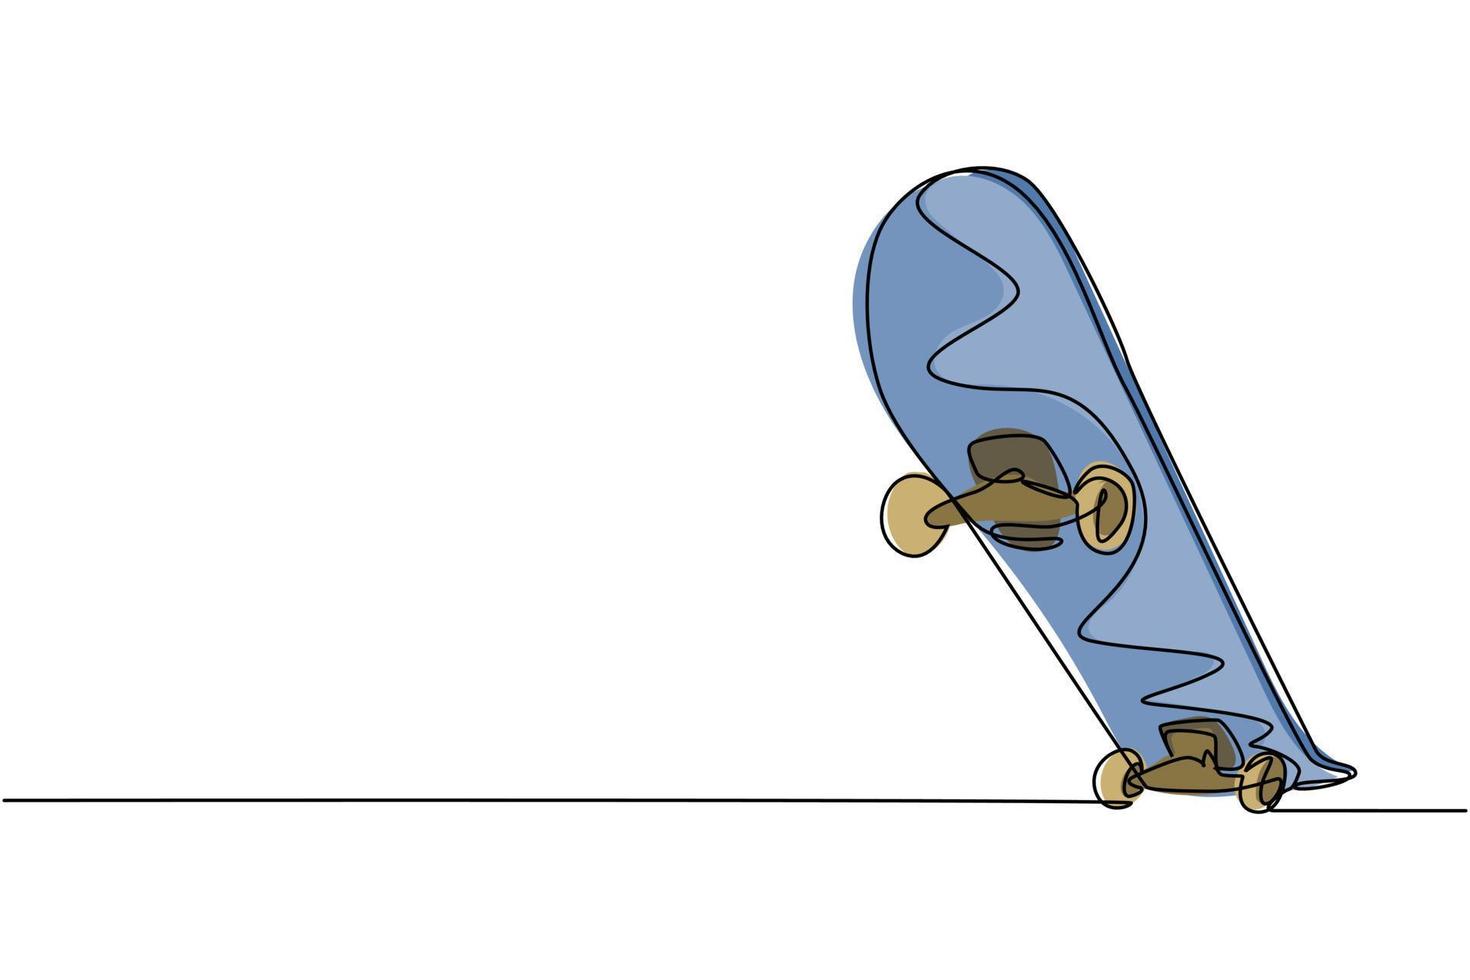 un seul dessin d'une vieille planche à roulettes rétro. hipster extrême classique long board sport concept ligne graphique continue dessiner illustration vectorielle de conception vecteur